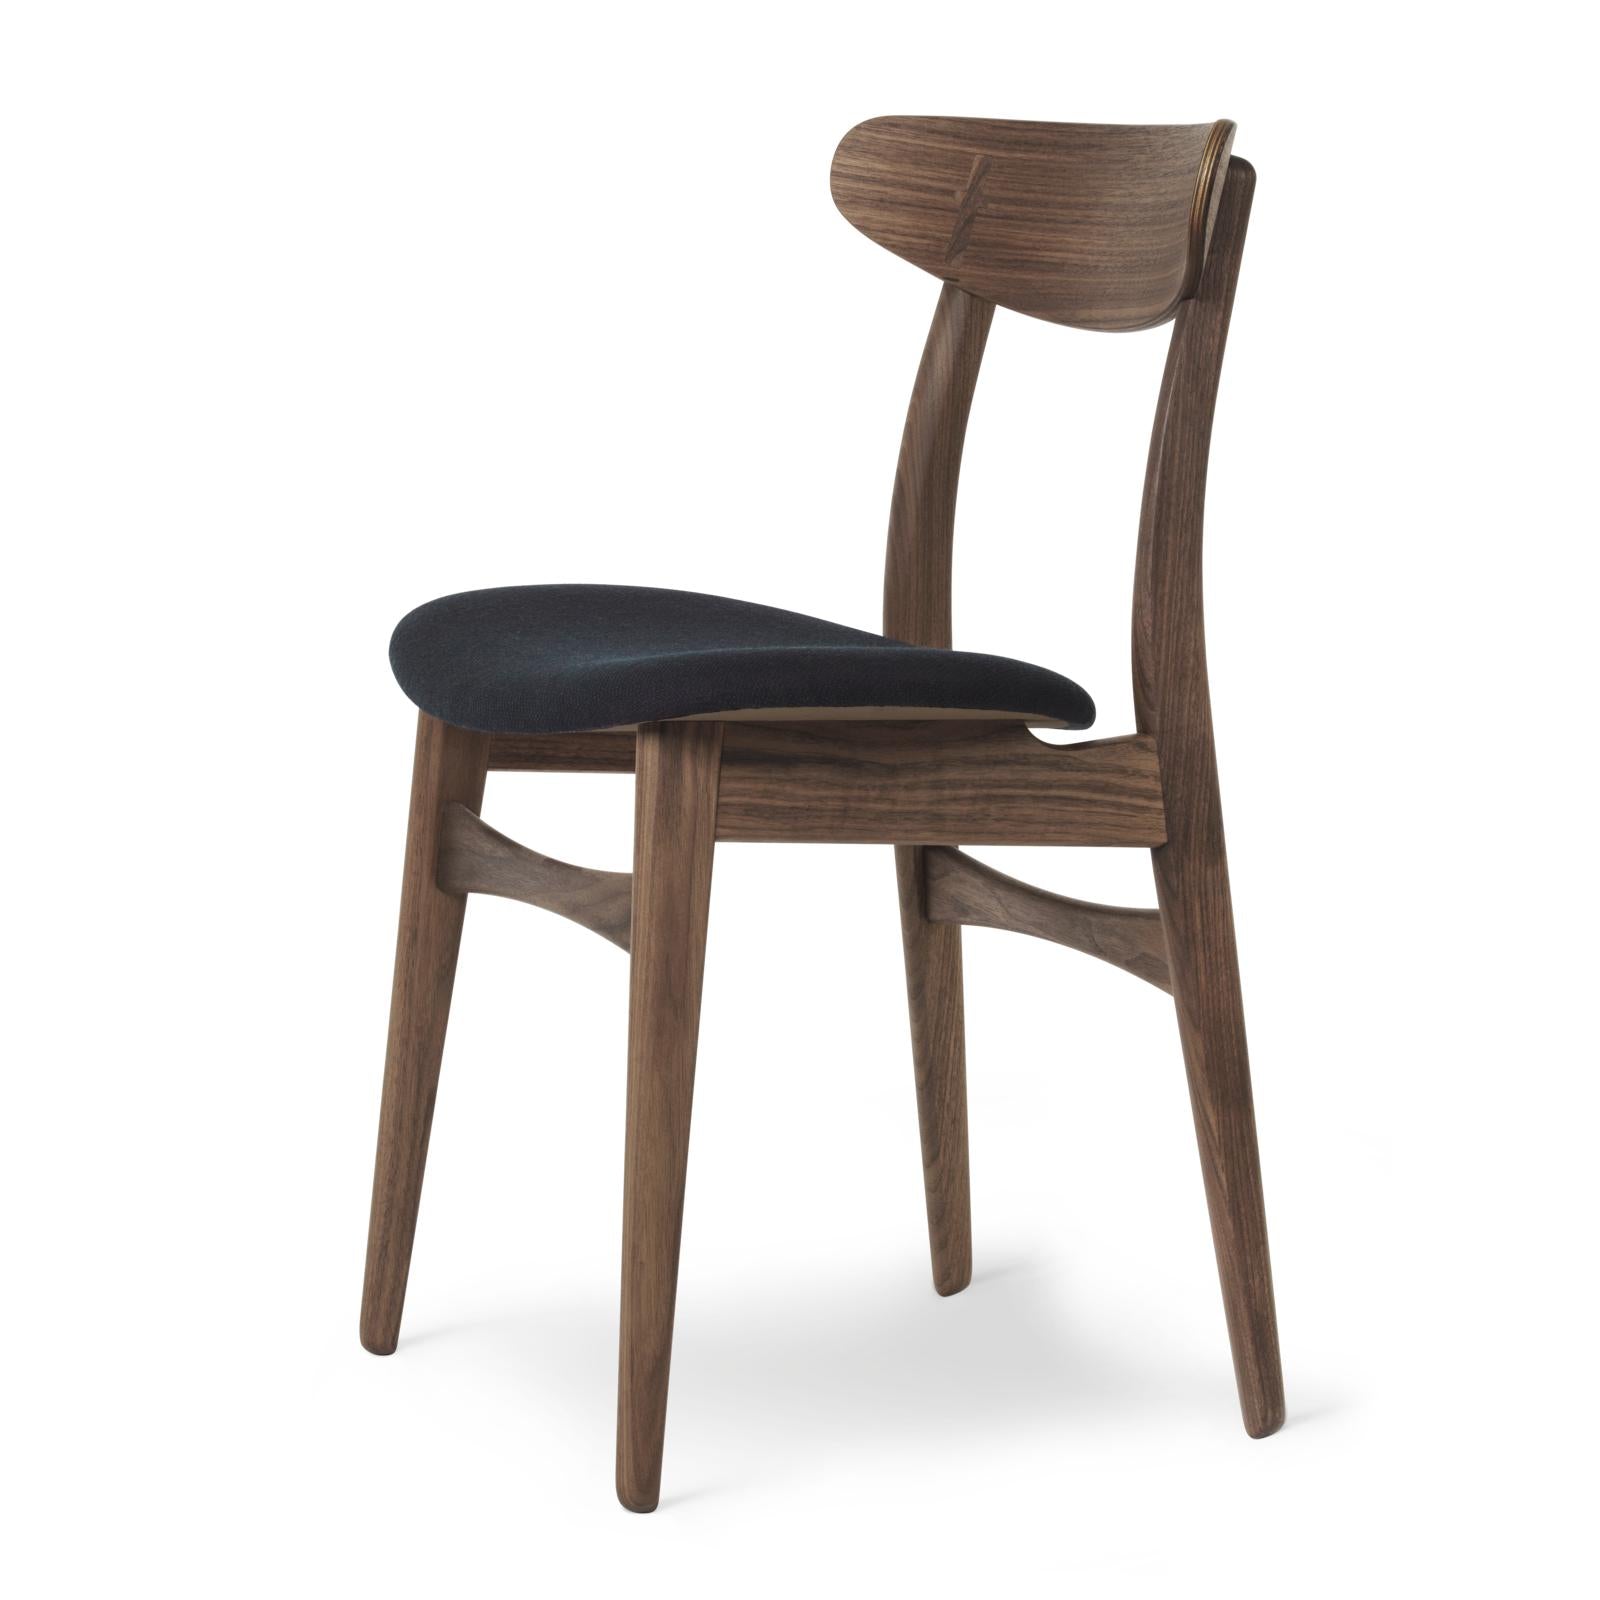 Carl Hansen CH30P -stol, olieret valnød, sort stof